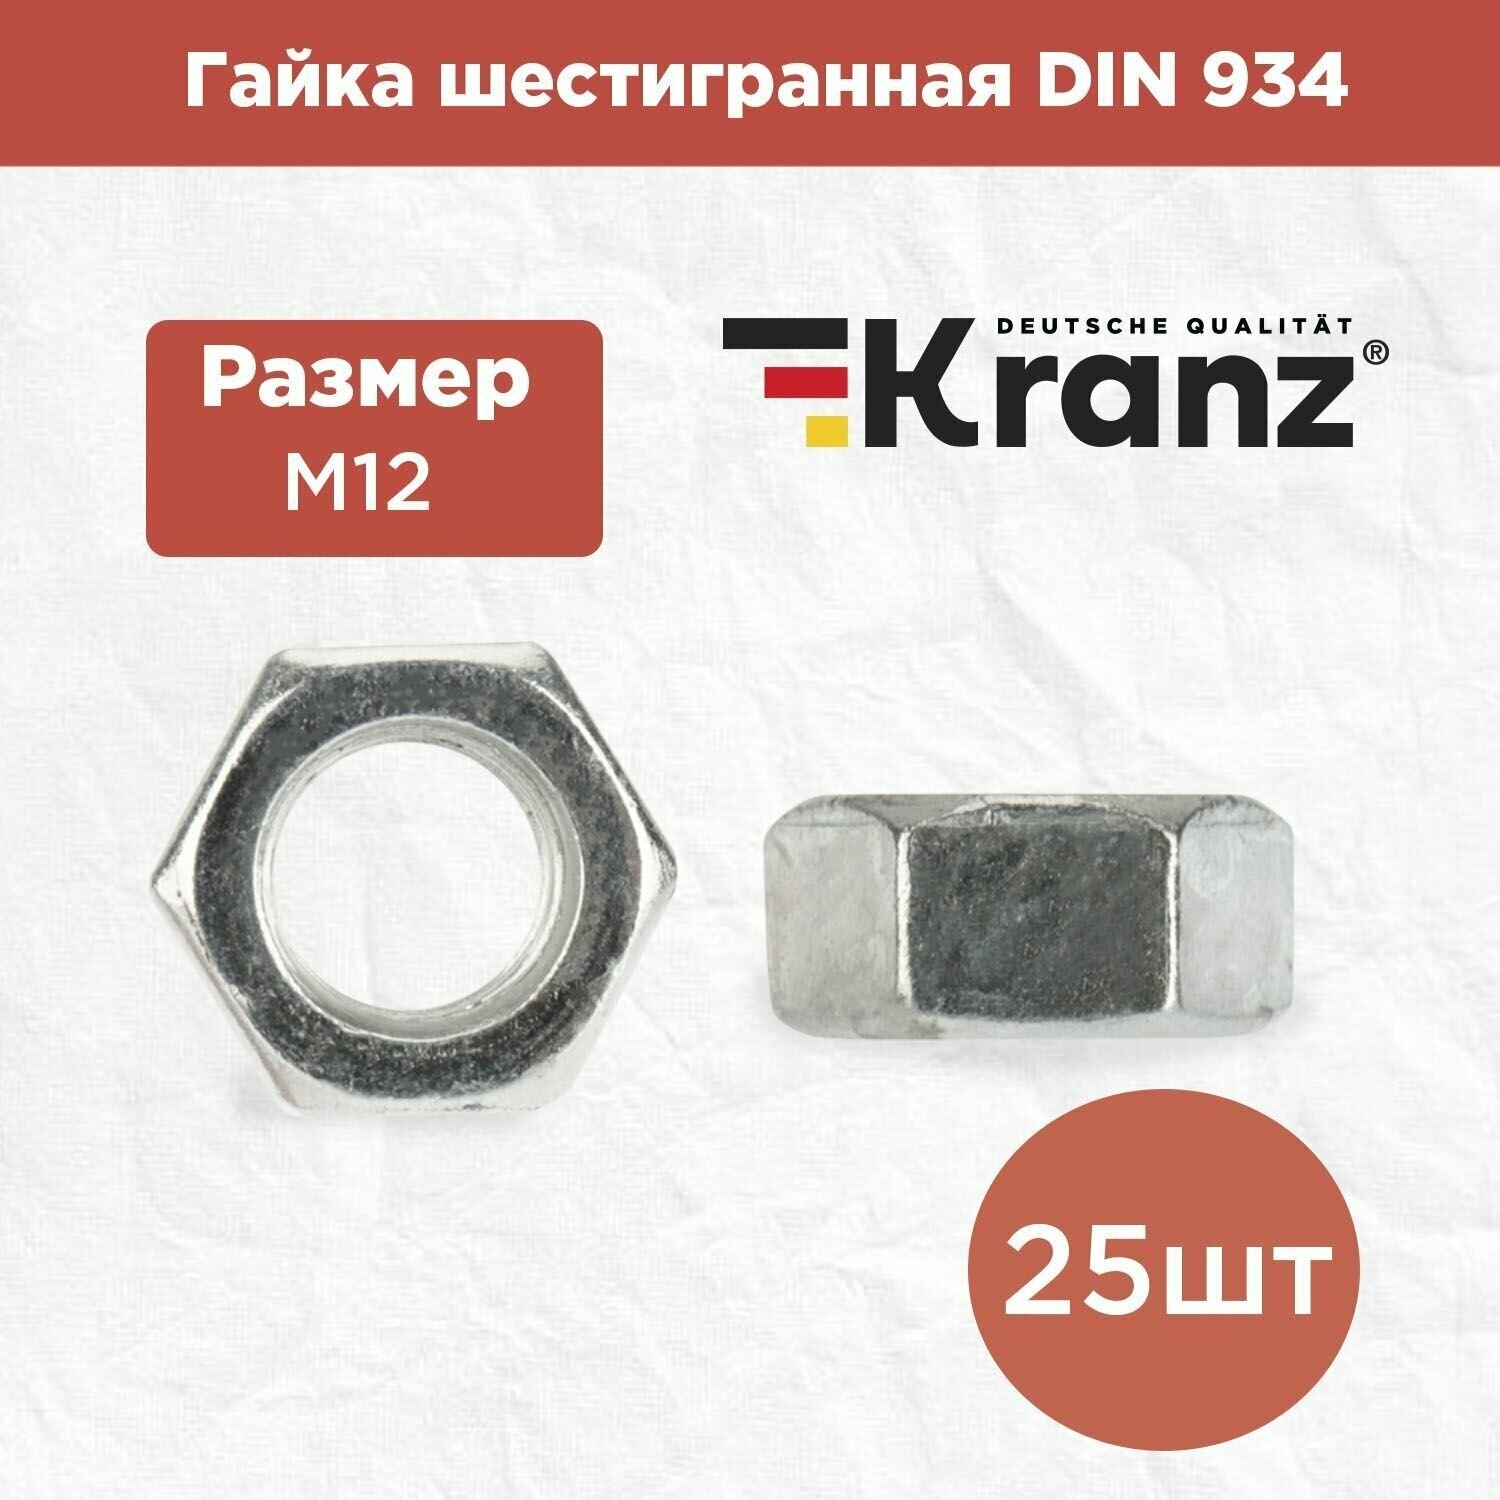 Гайка шестигранная KRANZ с противокоррозионным покрытием, стандарт DIN 934, M12, короб 25 штук